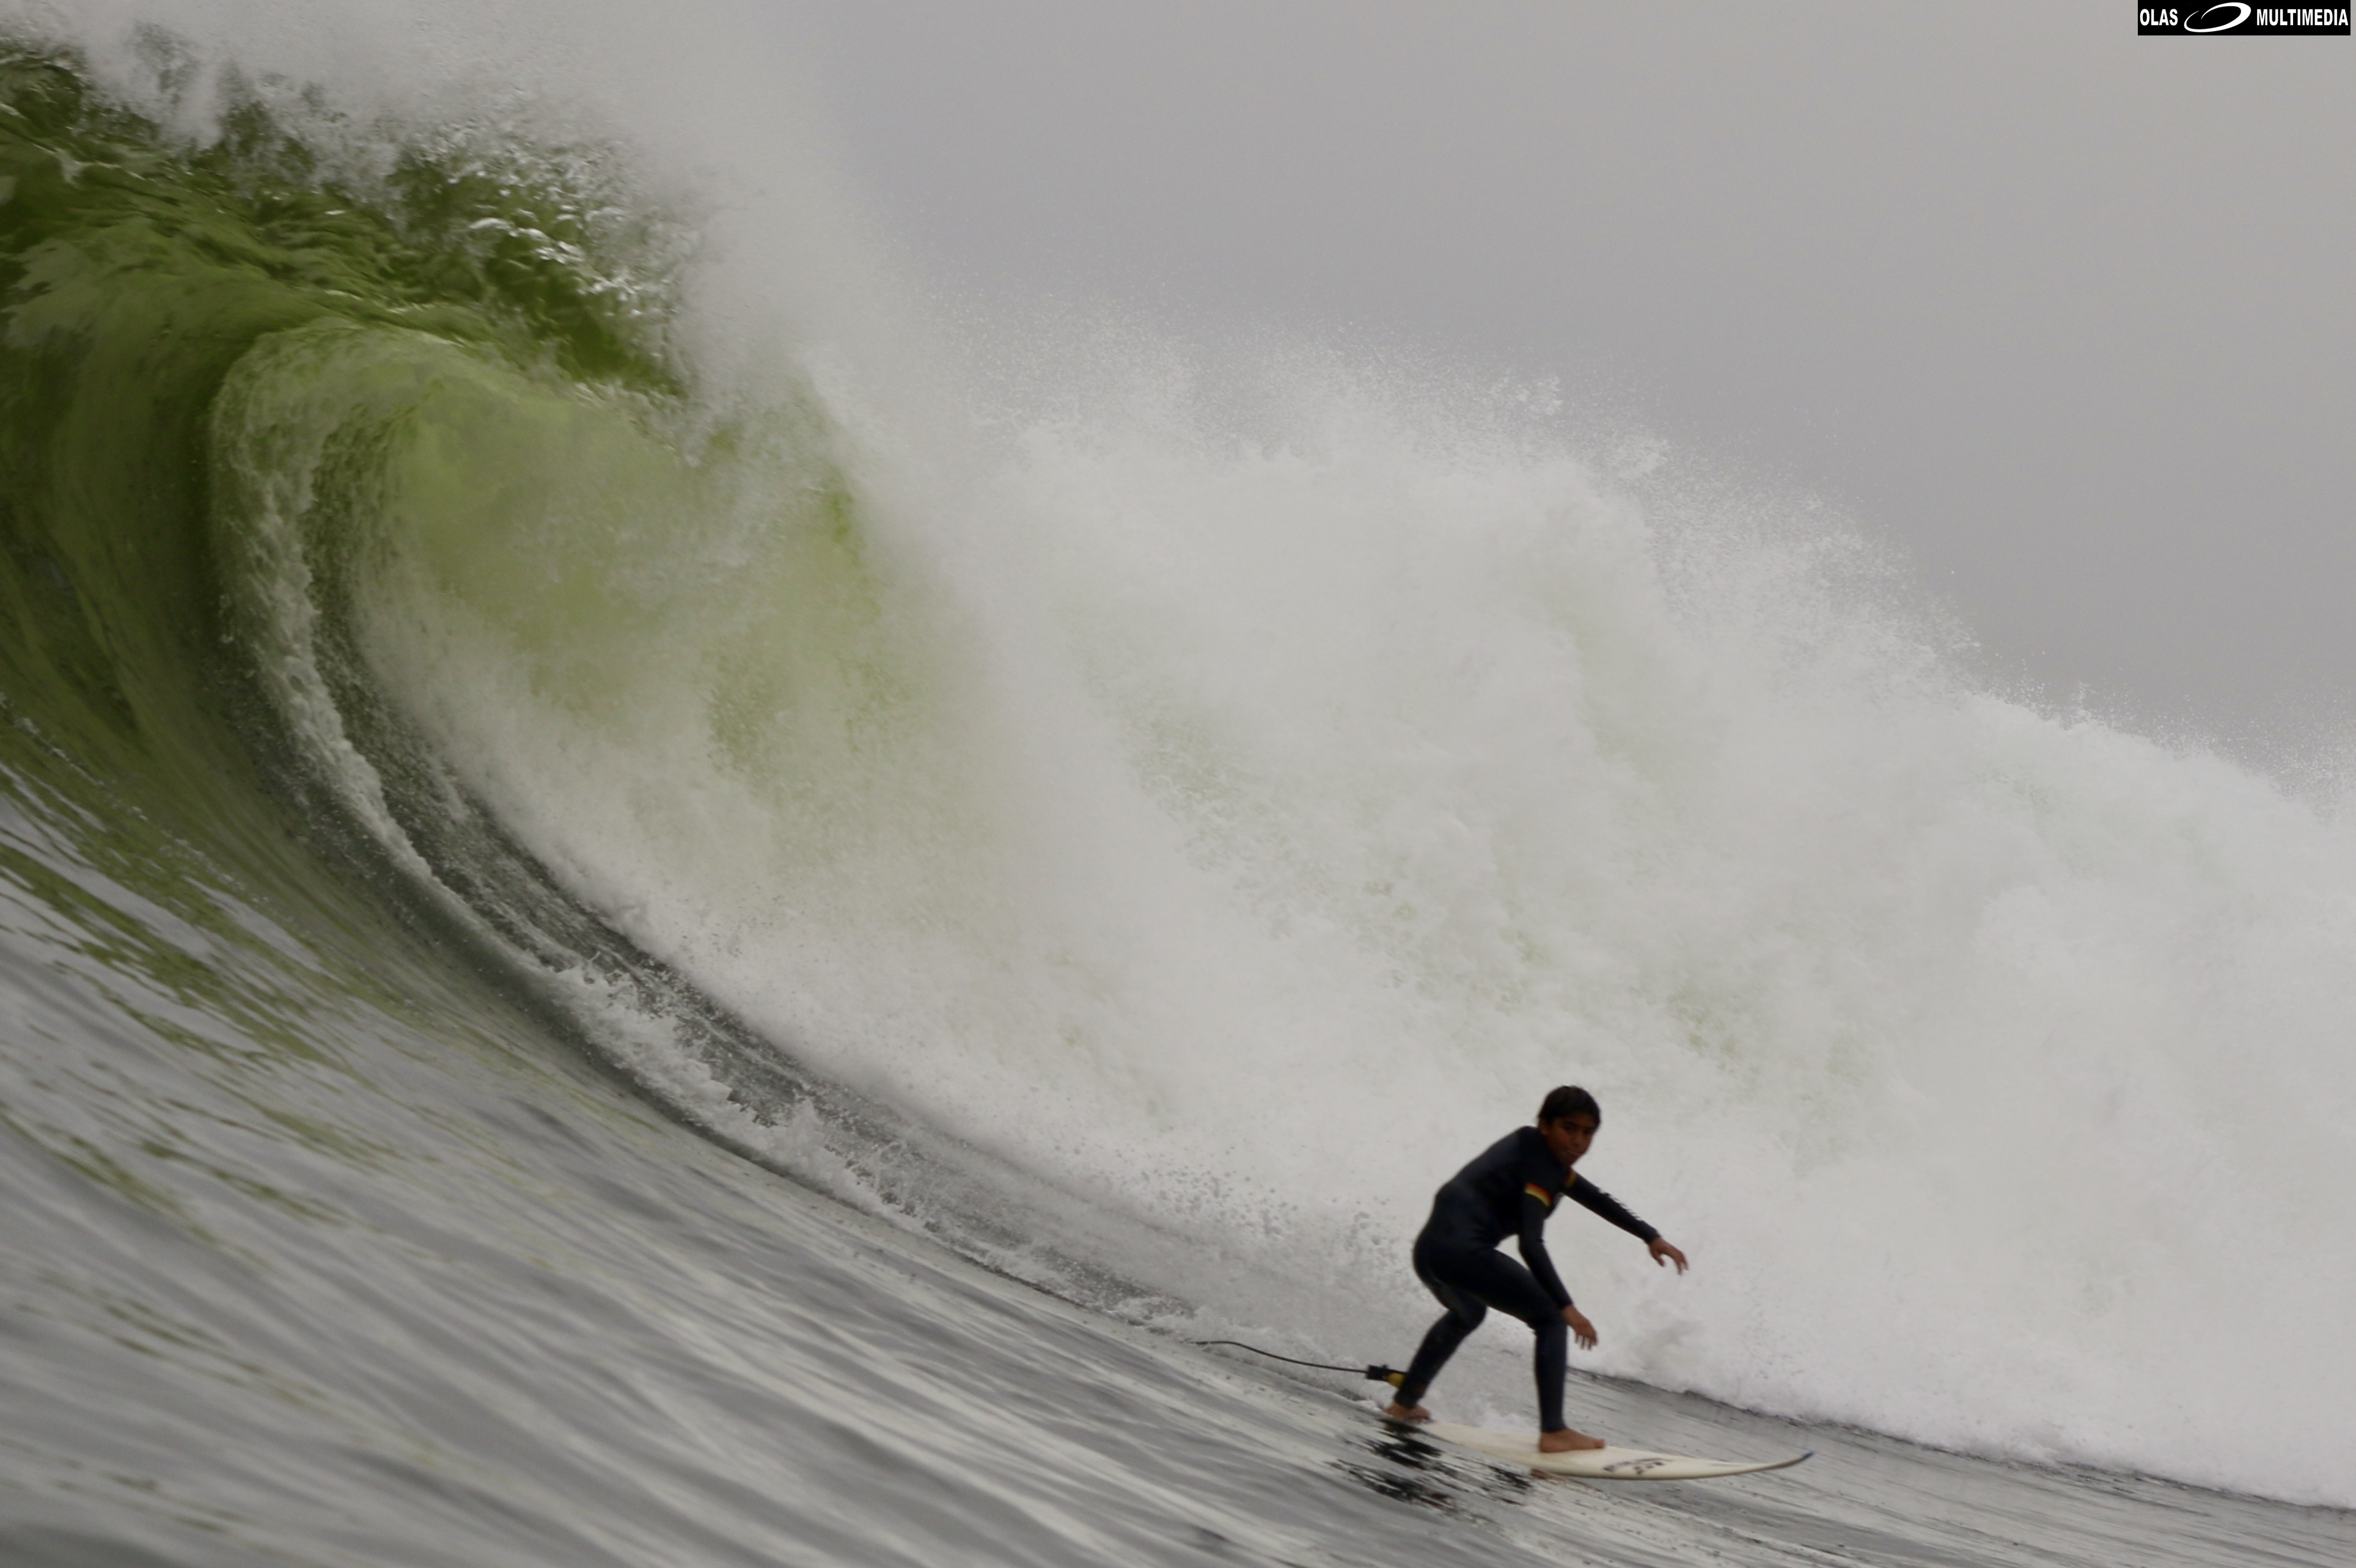 Locales de olas grandes en San Bartolo sorprenden con solo 11 años de edad dominando Peñascal 